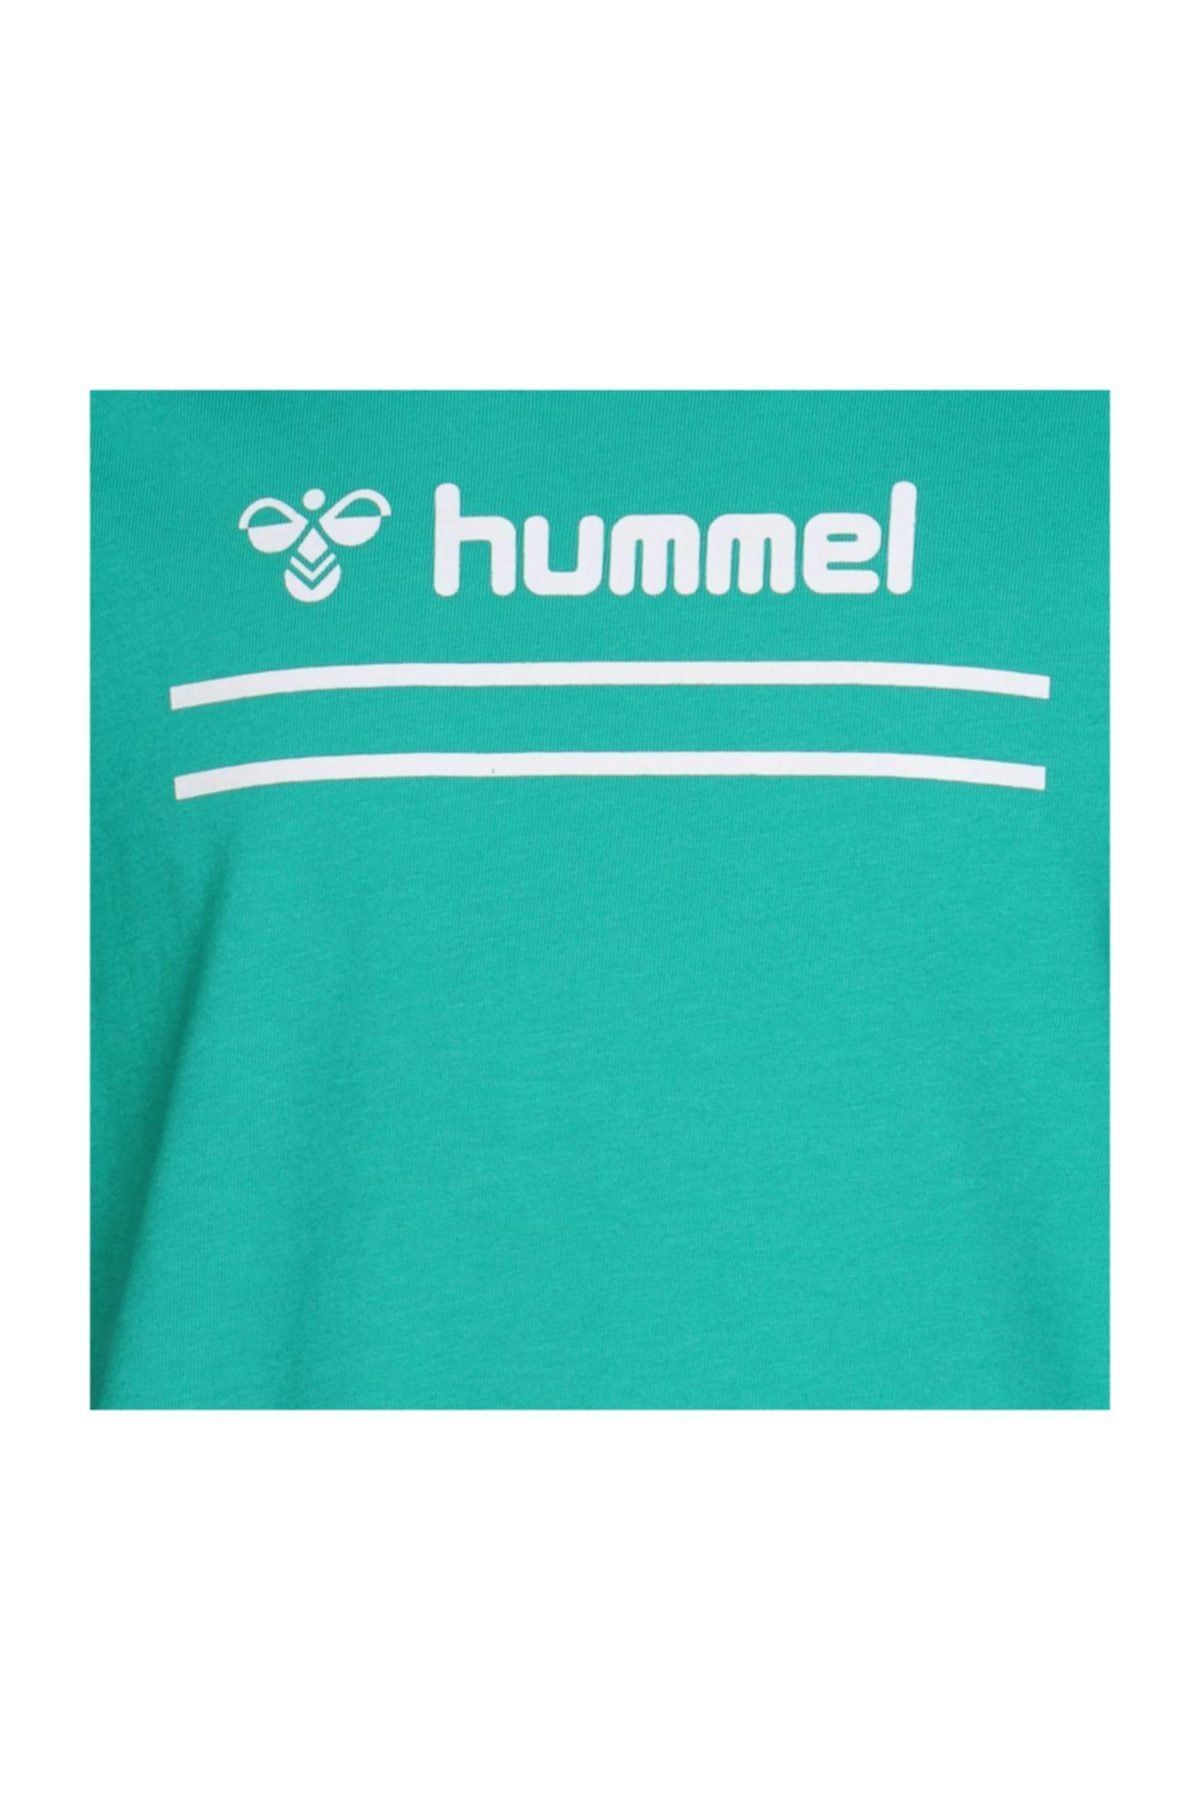 hummel Camel Kısa Kollu Tişört